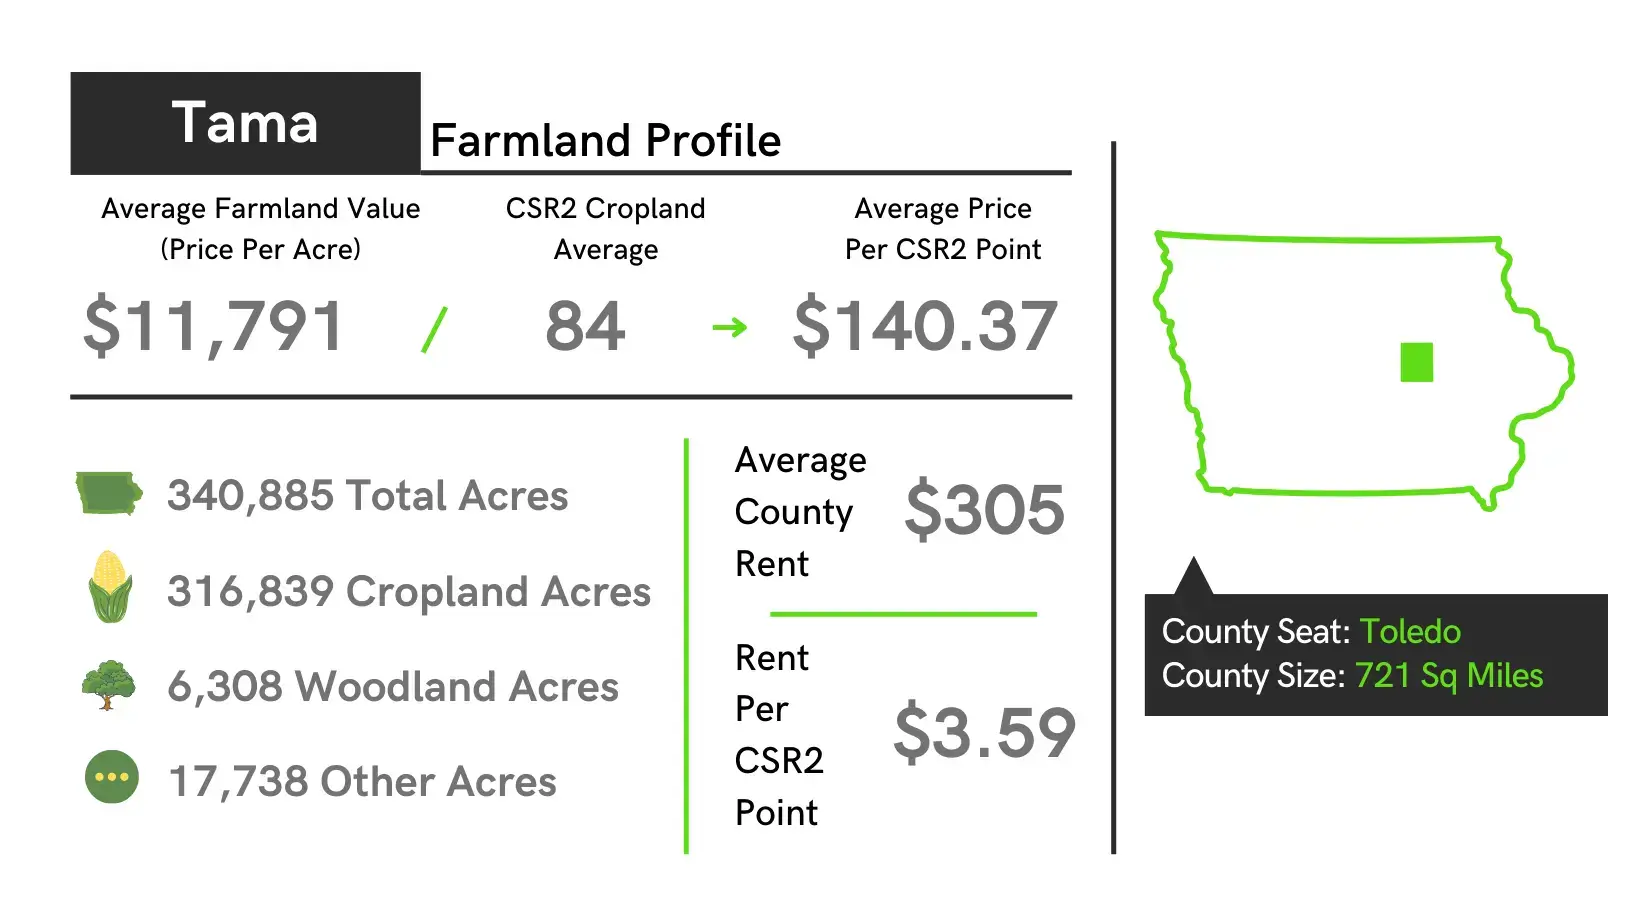 Tama County Farmland Profile